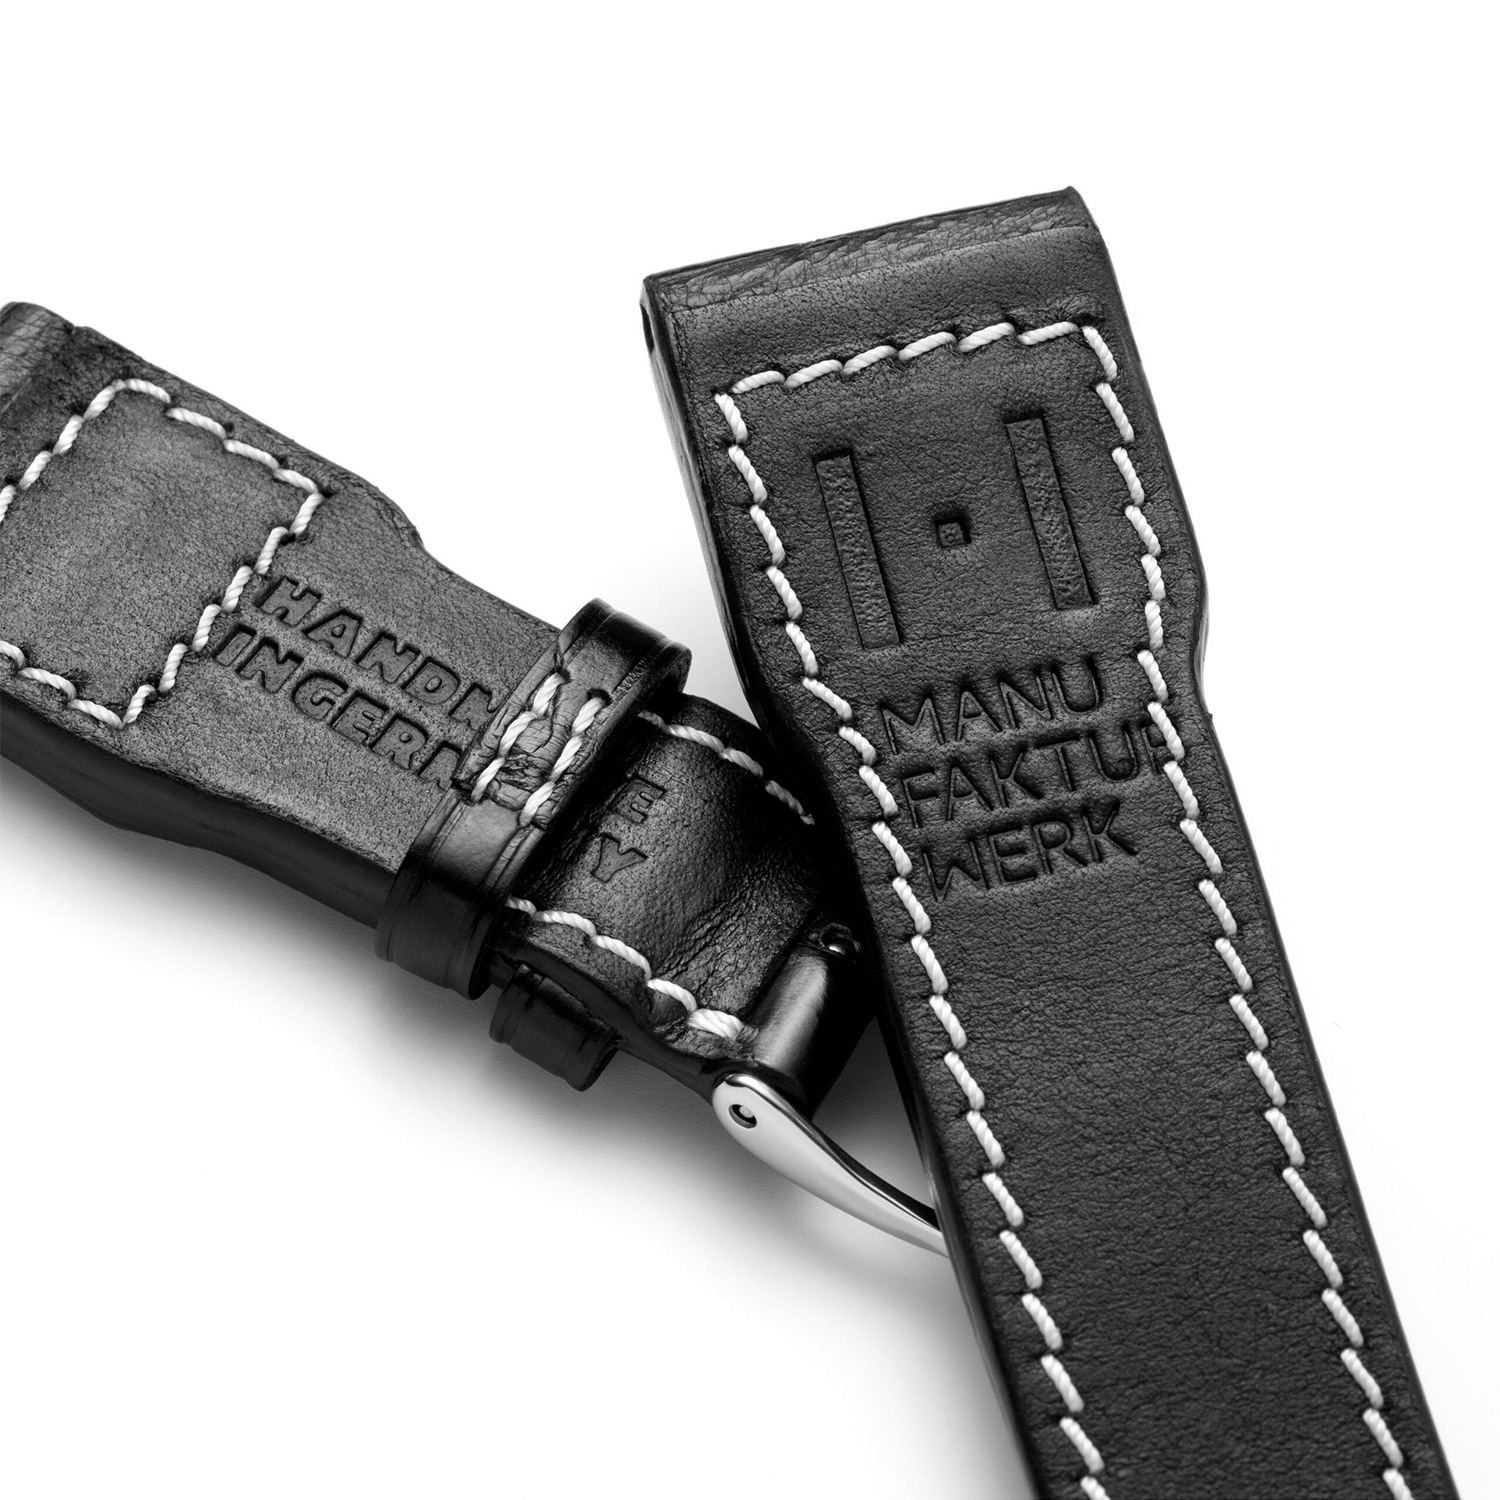 Manufakturwerk leather strap Alligator black 22/18